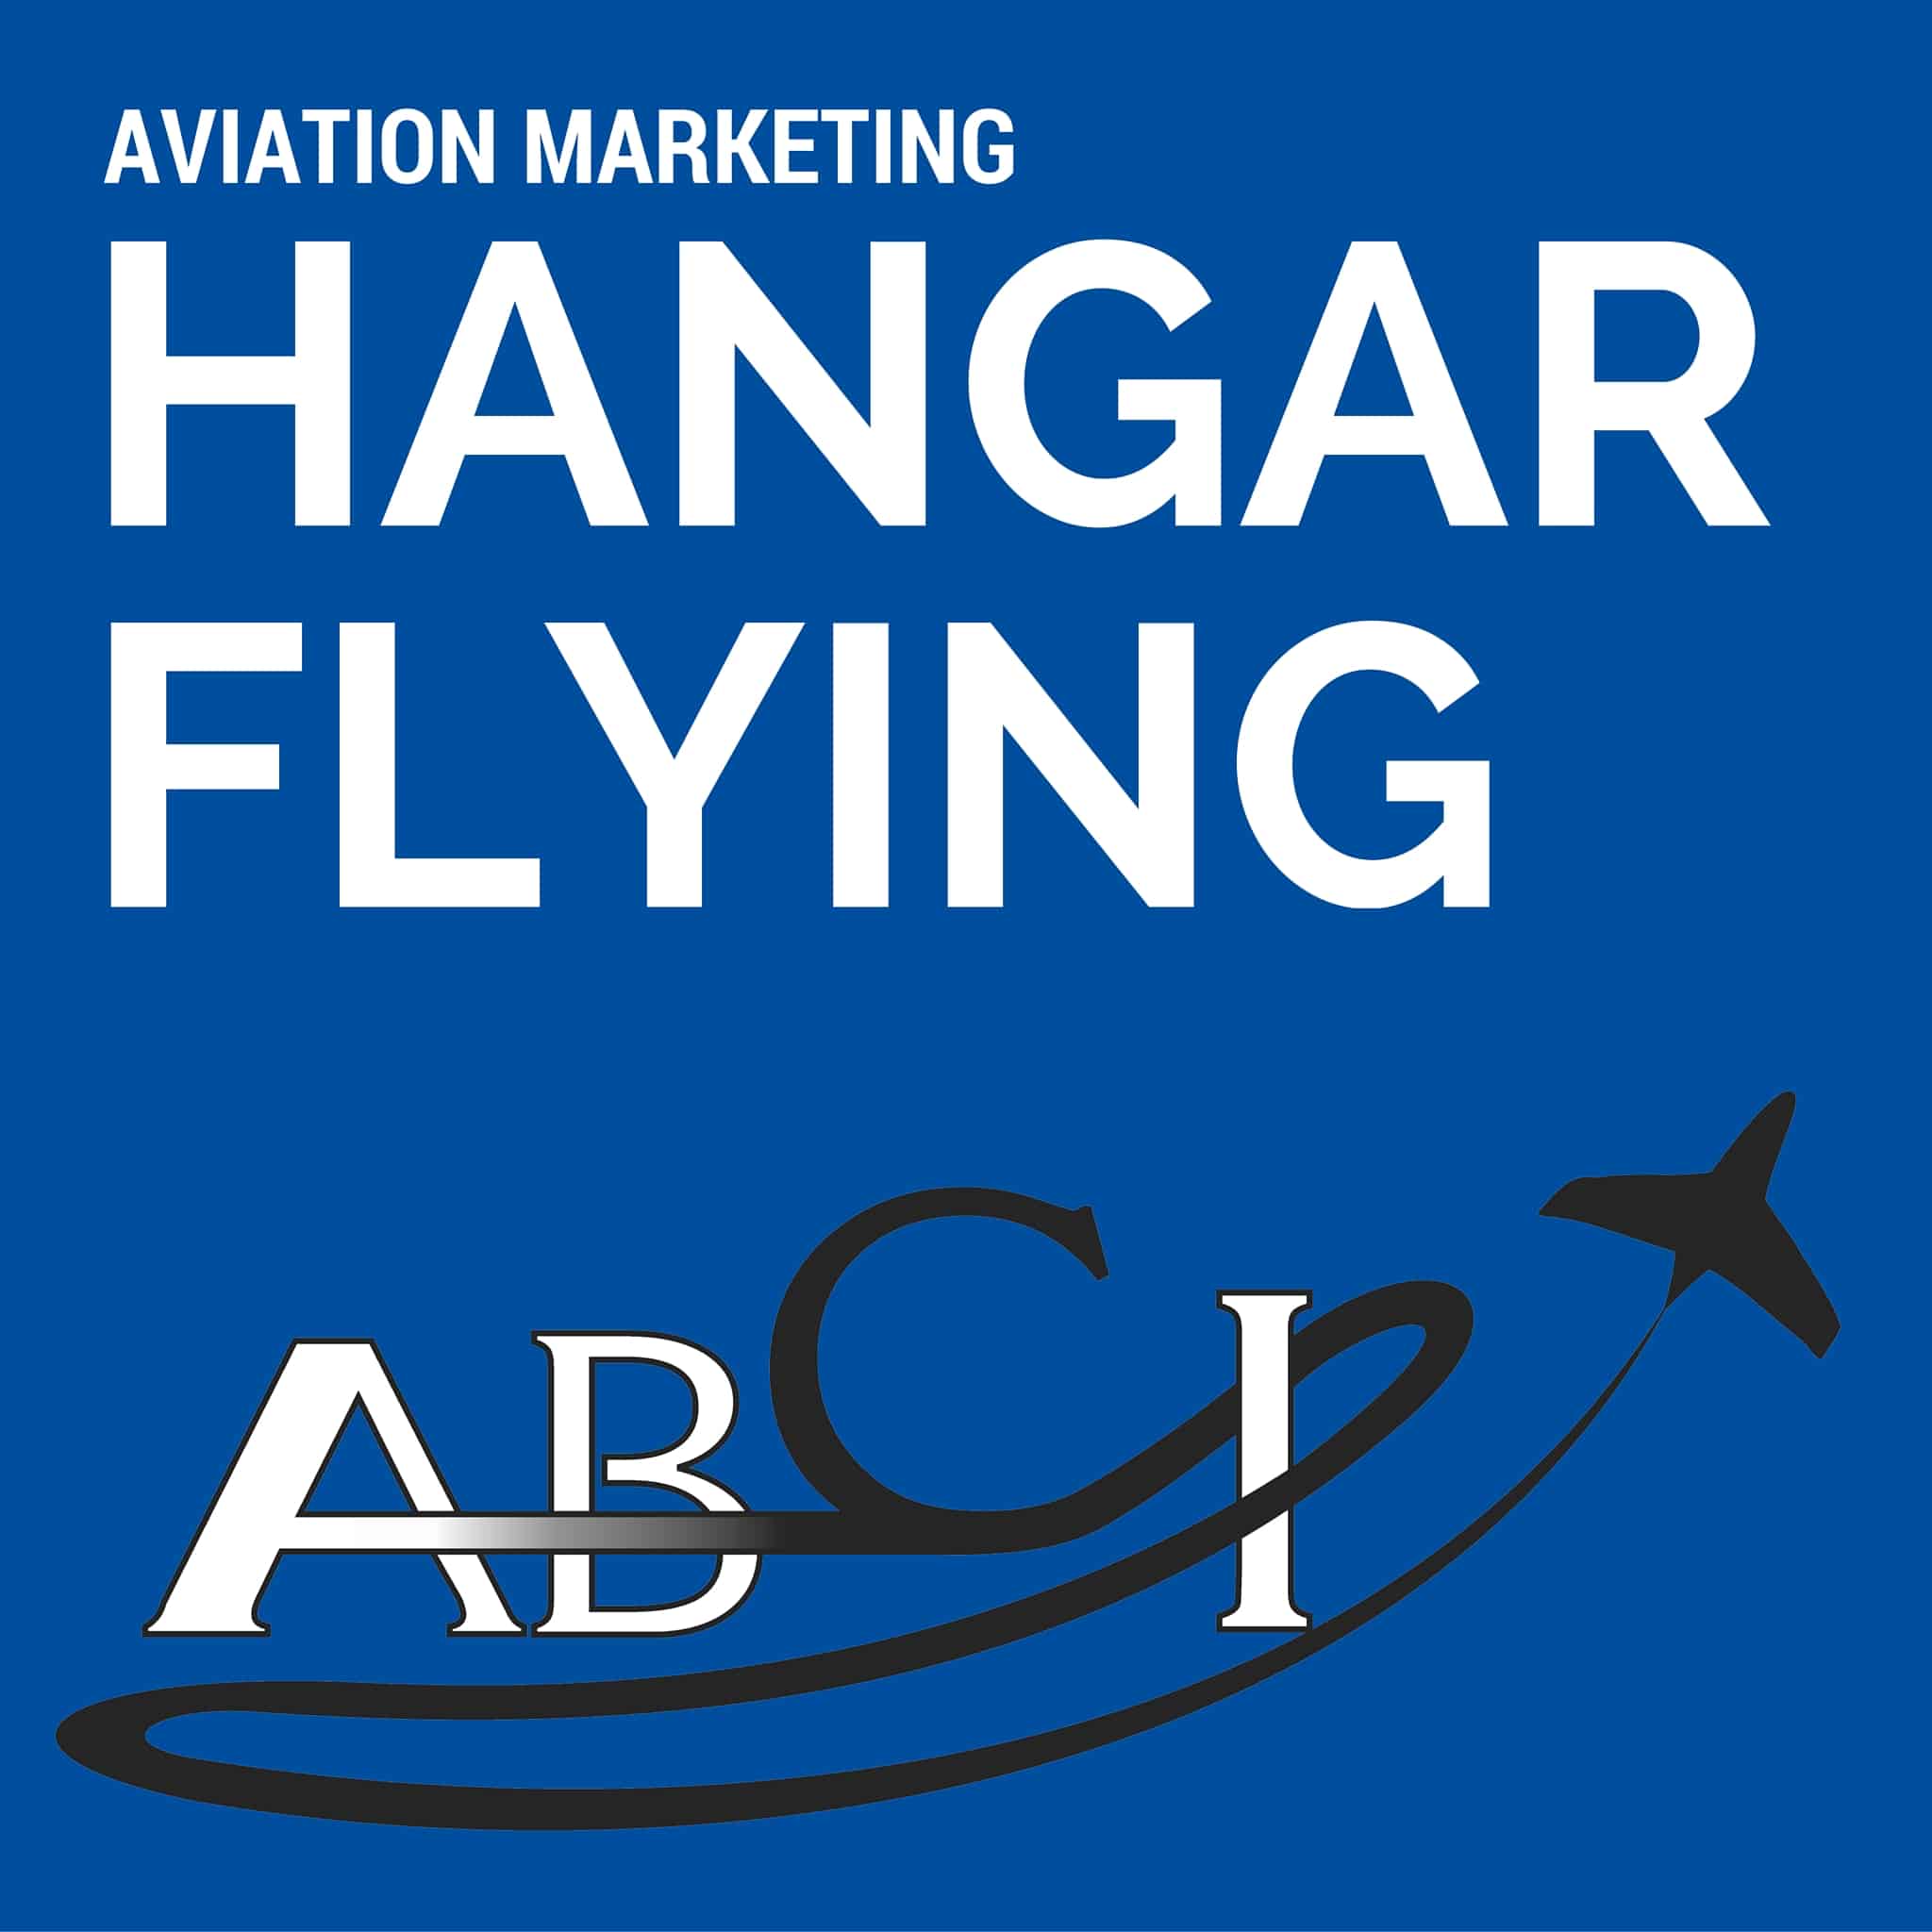 Aviation Marketing Hangar Flying